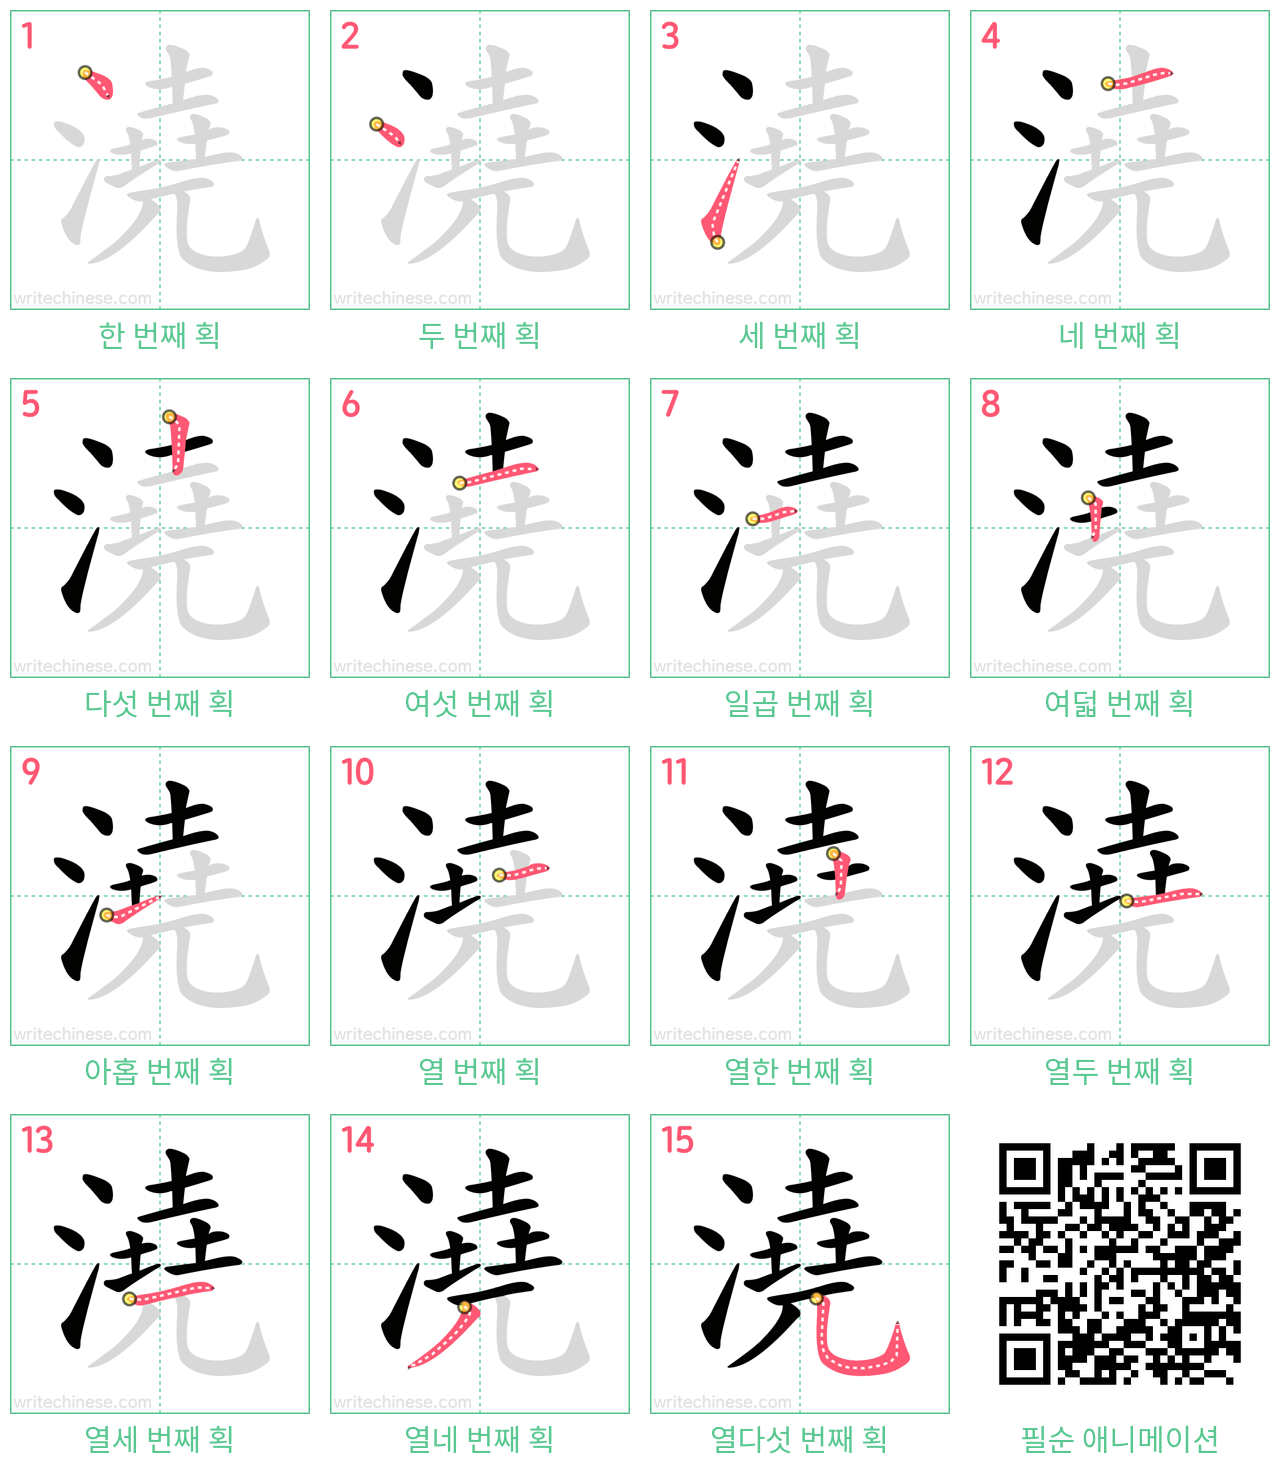 澆 step-by-step stroke order diagrams